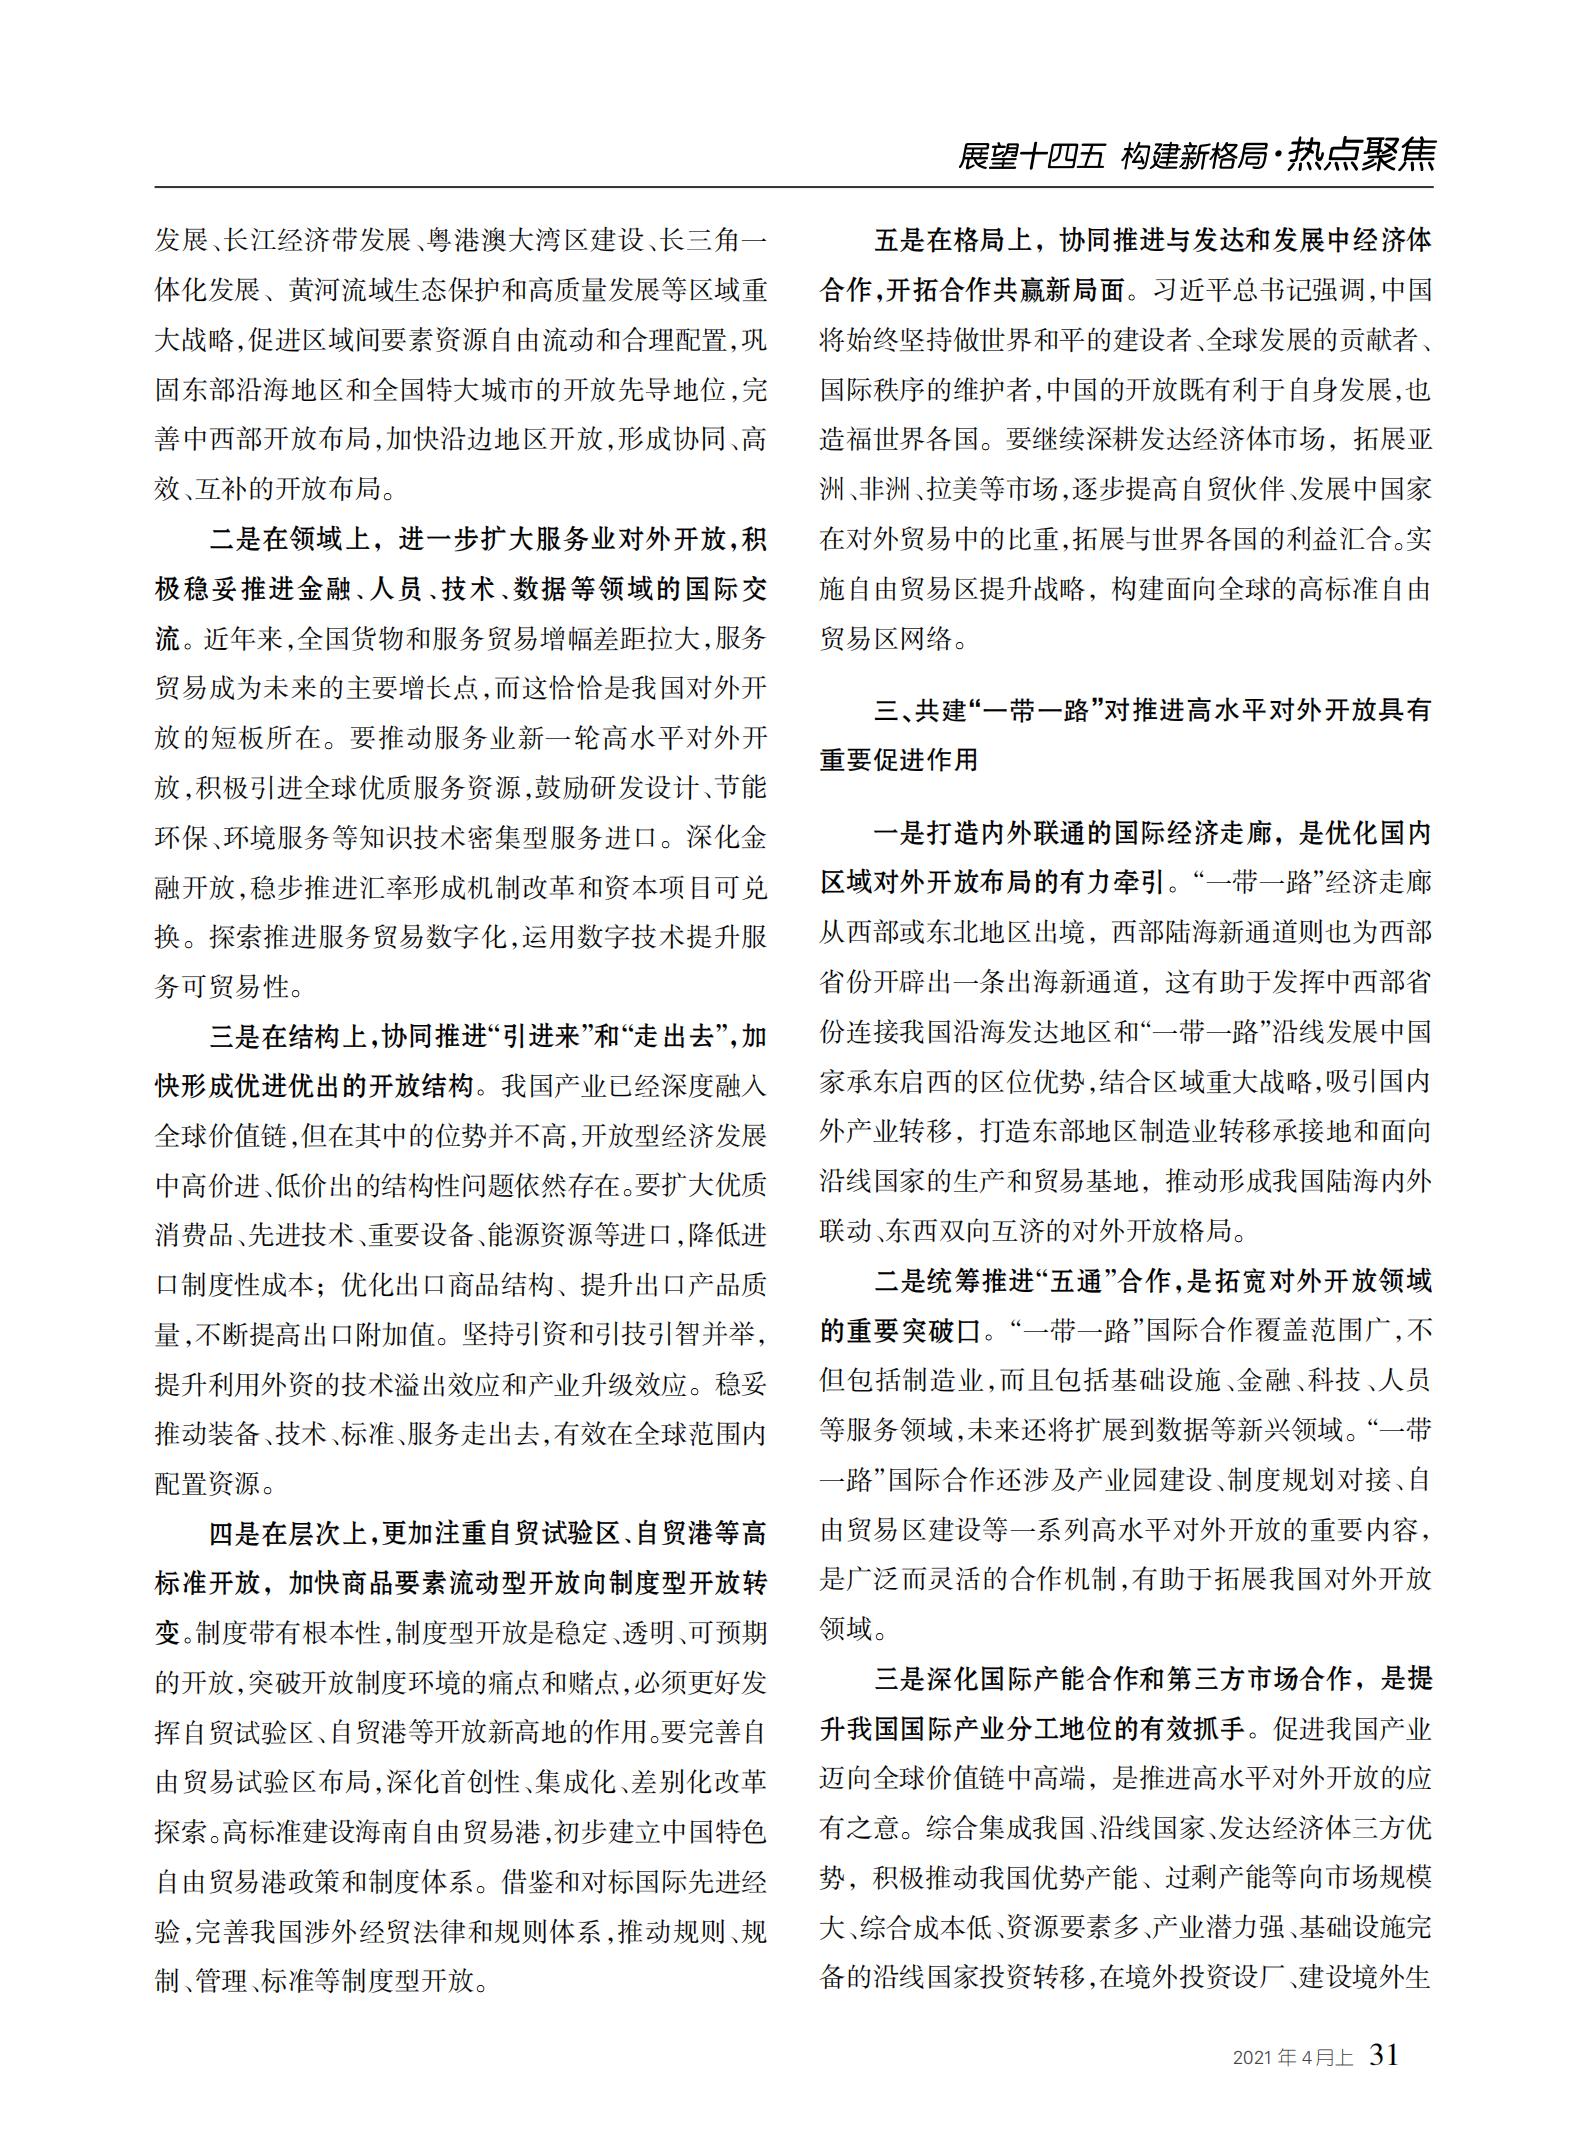 中国经贸导刊2021-4上印刷_30.jpg